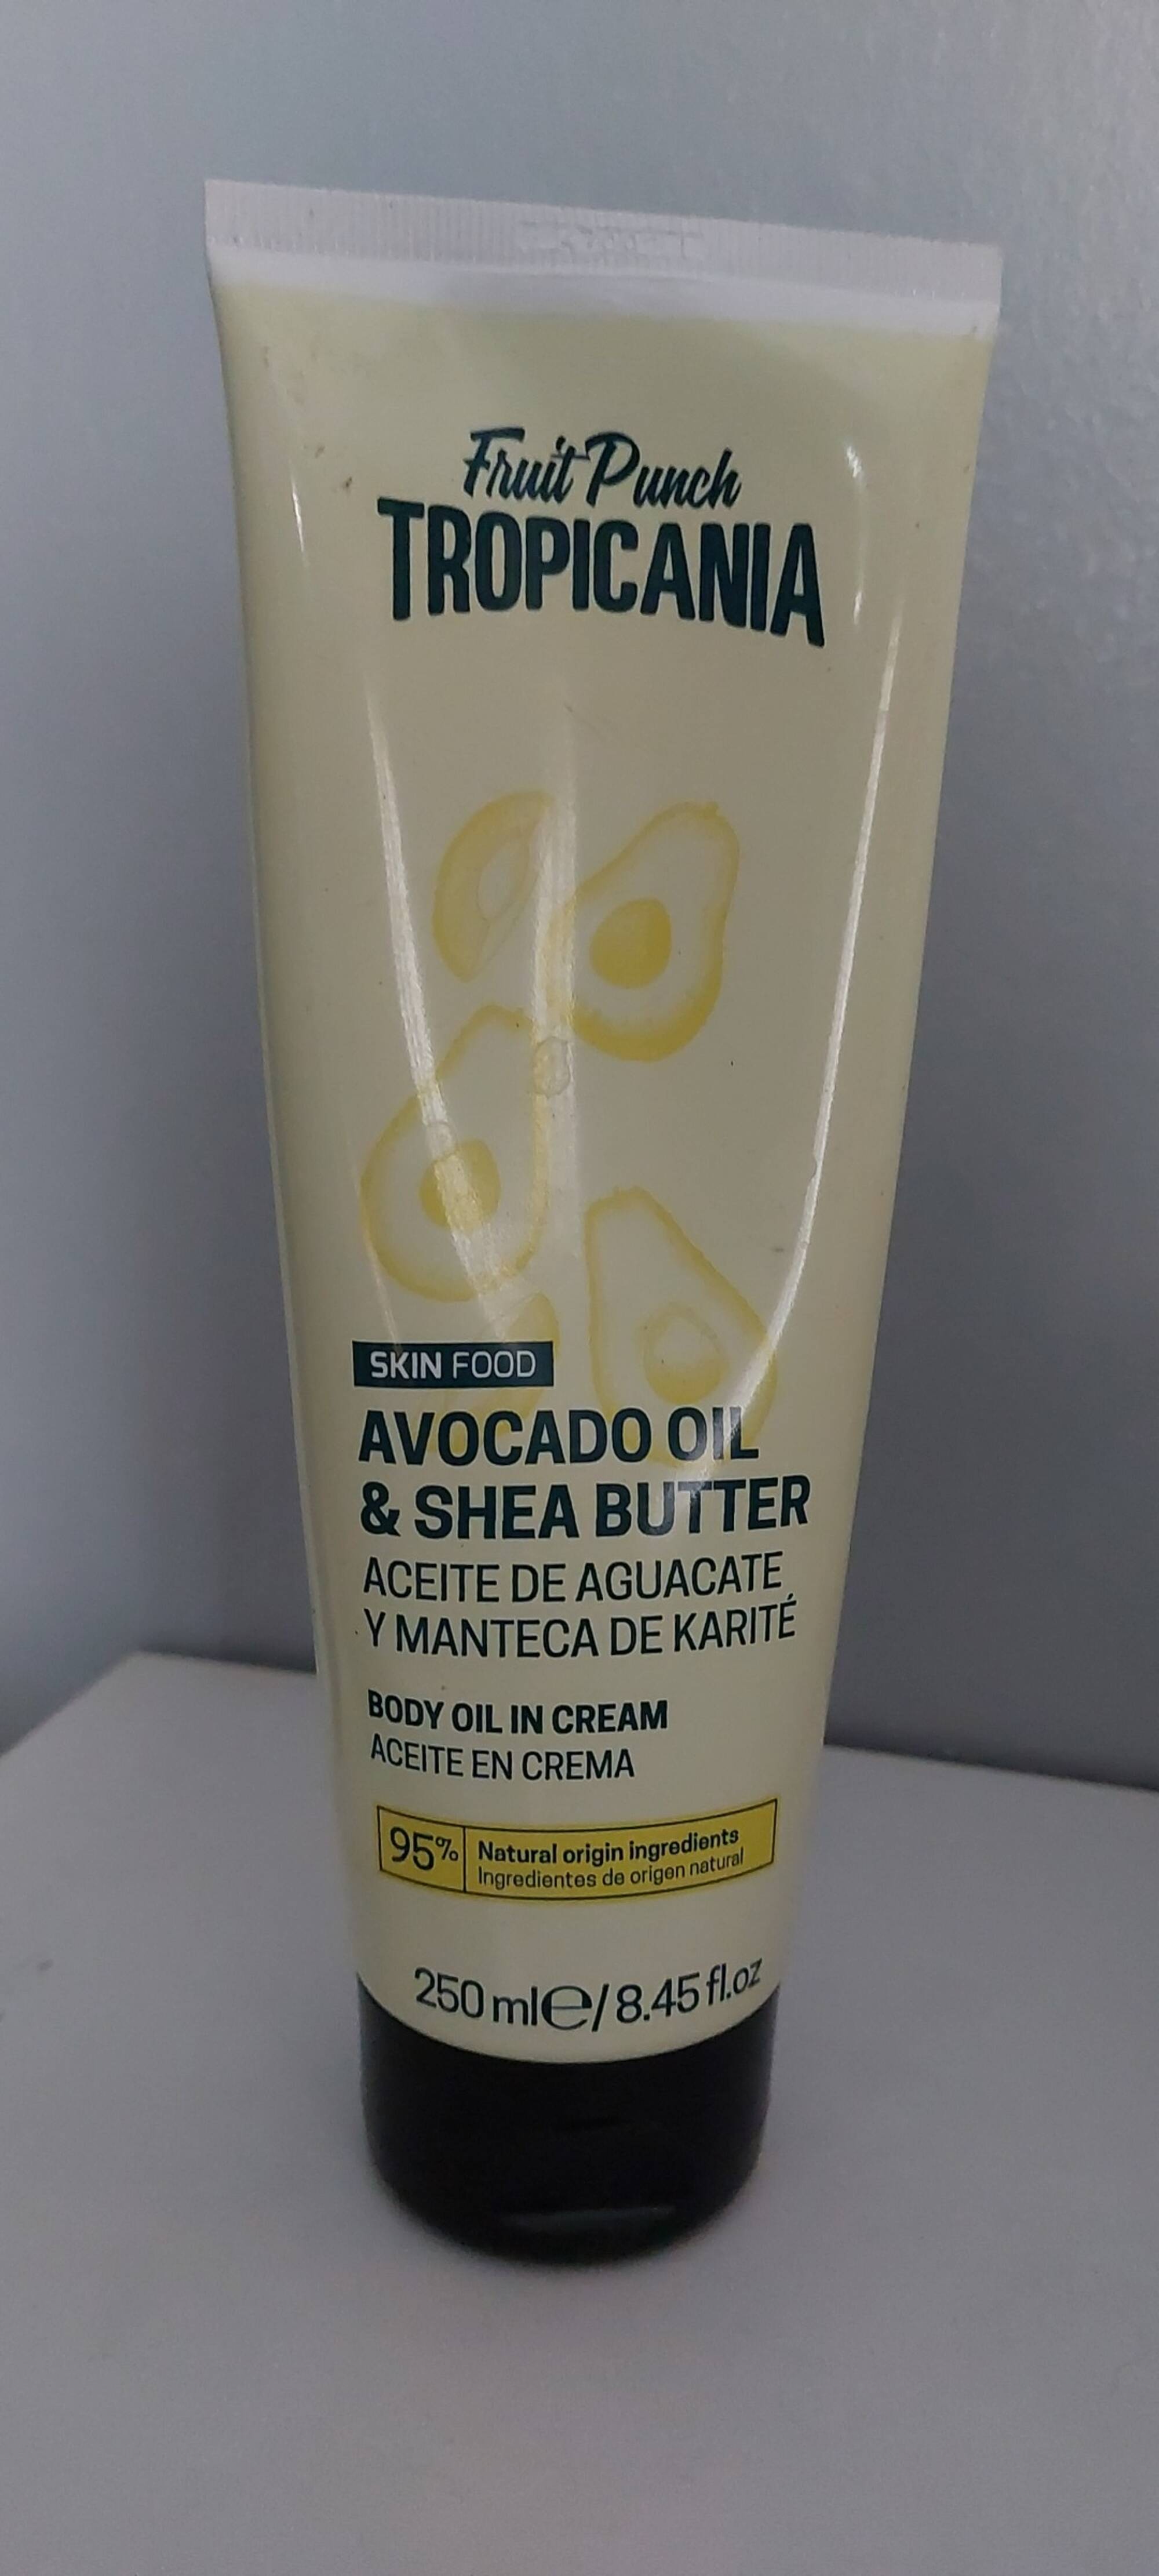 TROPICANIA - Body oil in cream avocado oil & shea butter